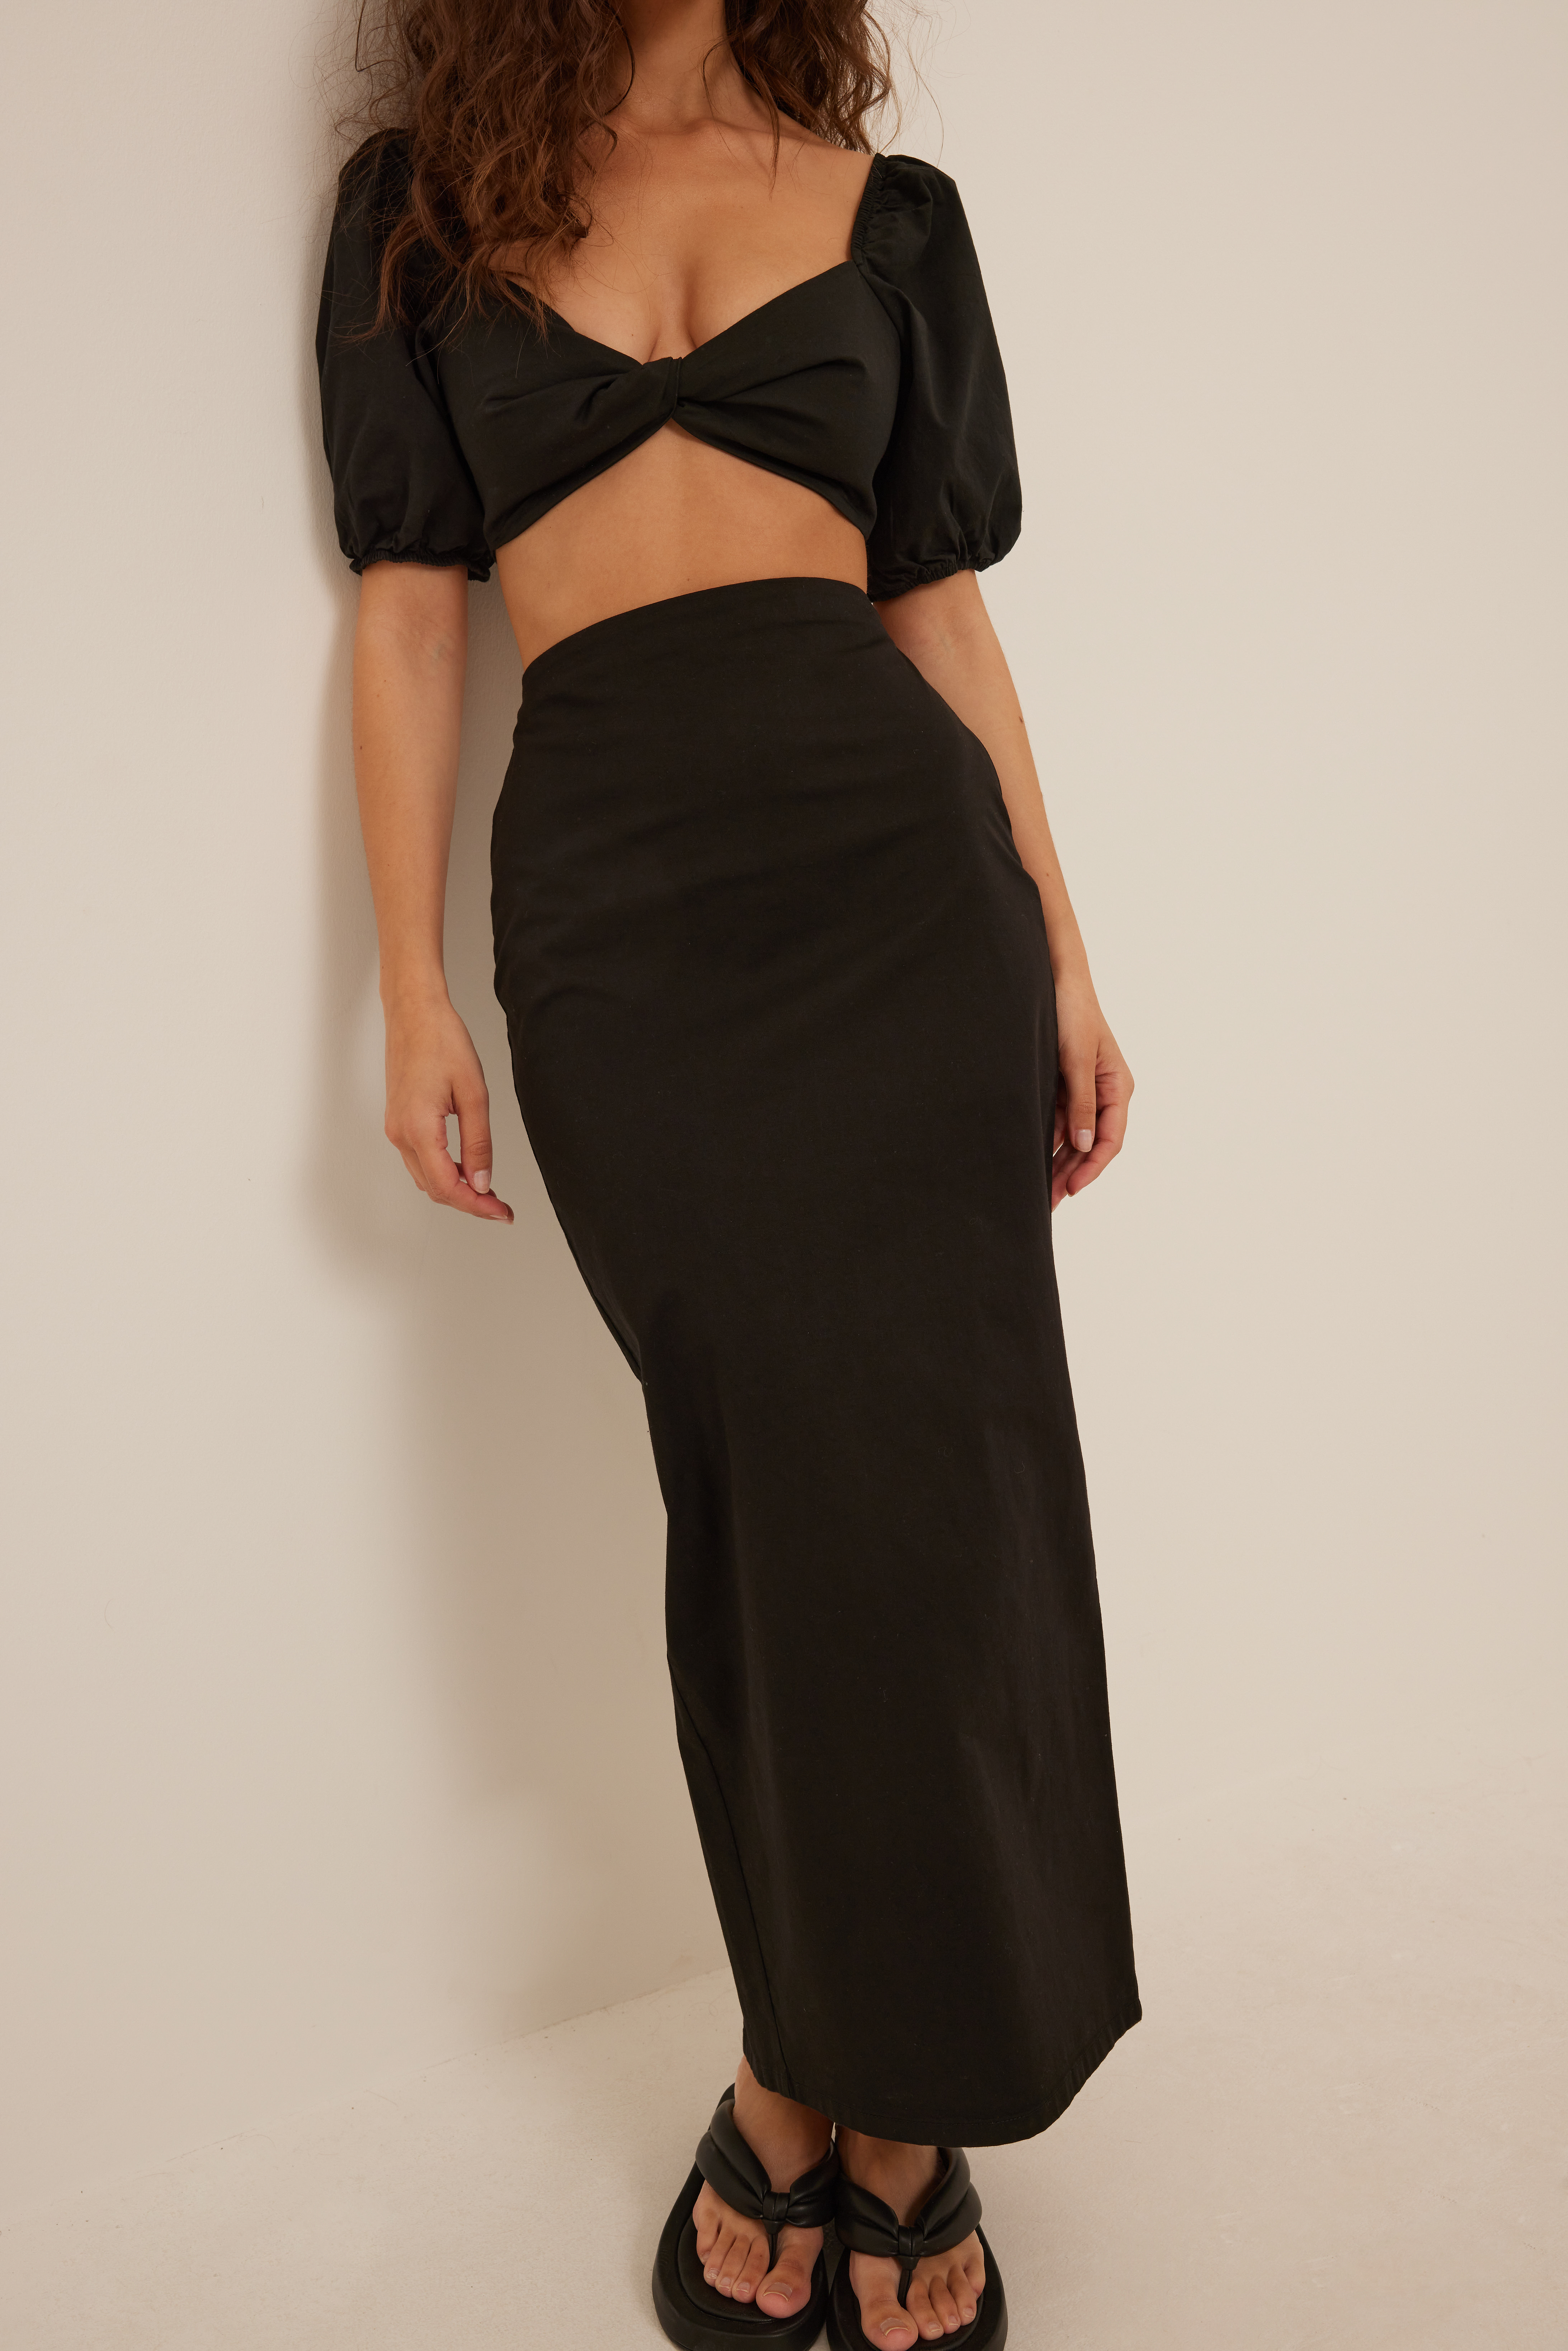 Lauren Lewis x NA-KD Long Slit Detail Skirt - Black